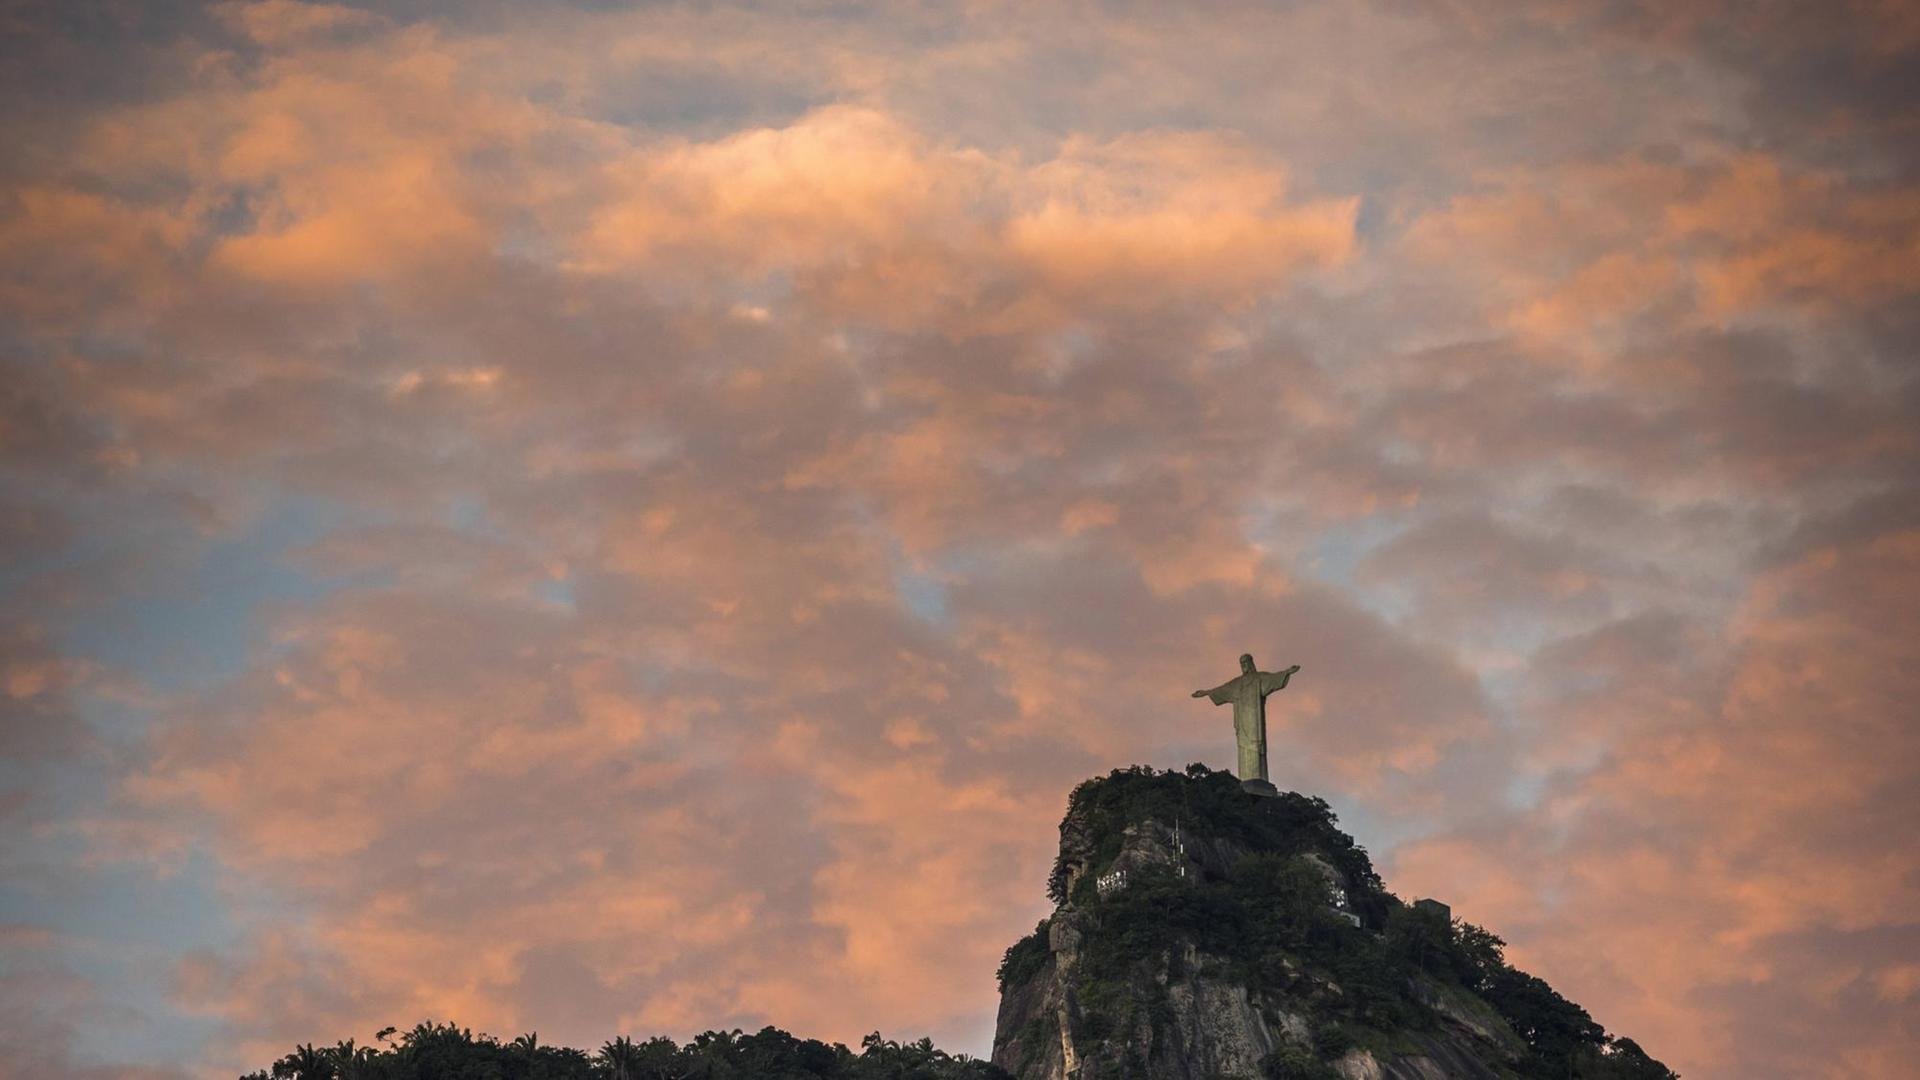 "Christus, der Erlöser" - Monumentale Statue im Süden von Rio de Janeiro in Brasilien auf dem Berg Corcovado